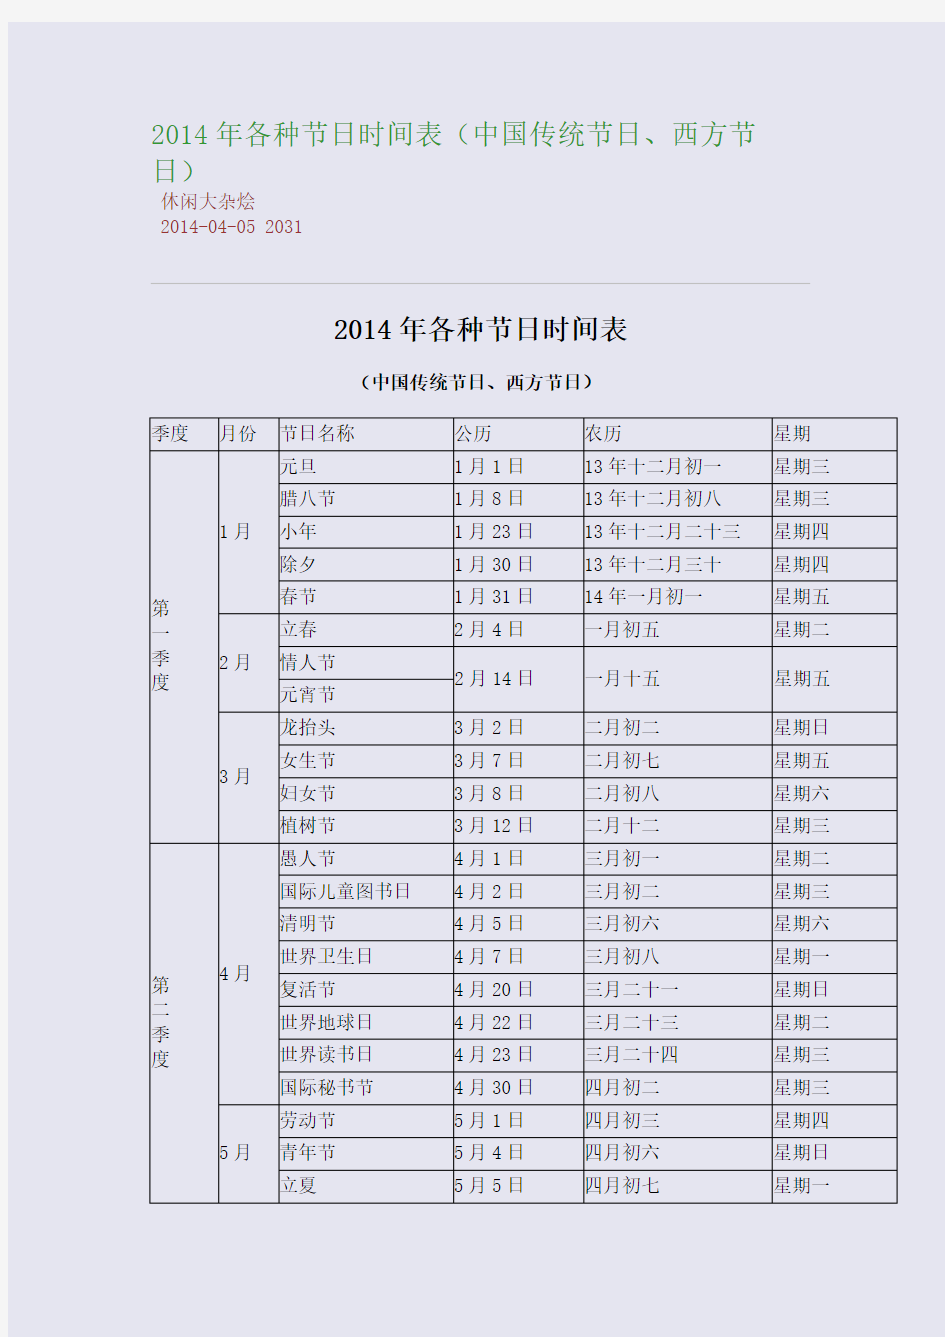 2014年各种节日时间表(中国传统节日、西方节日)